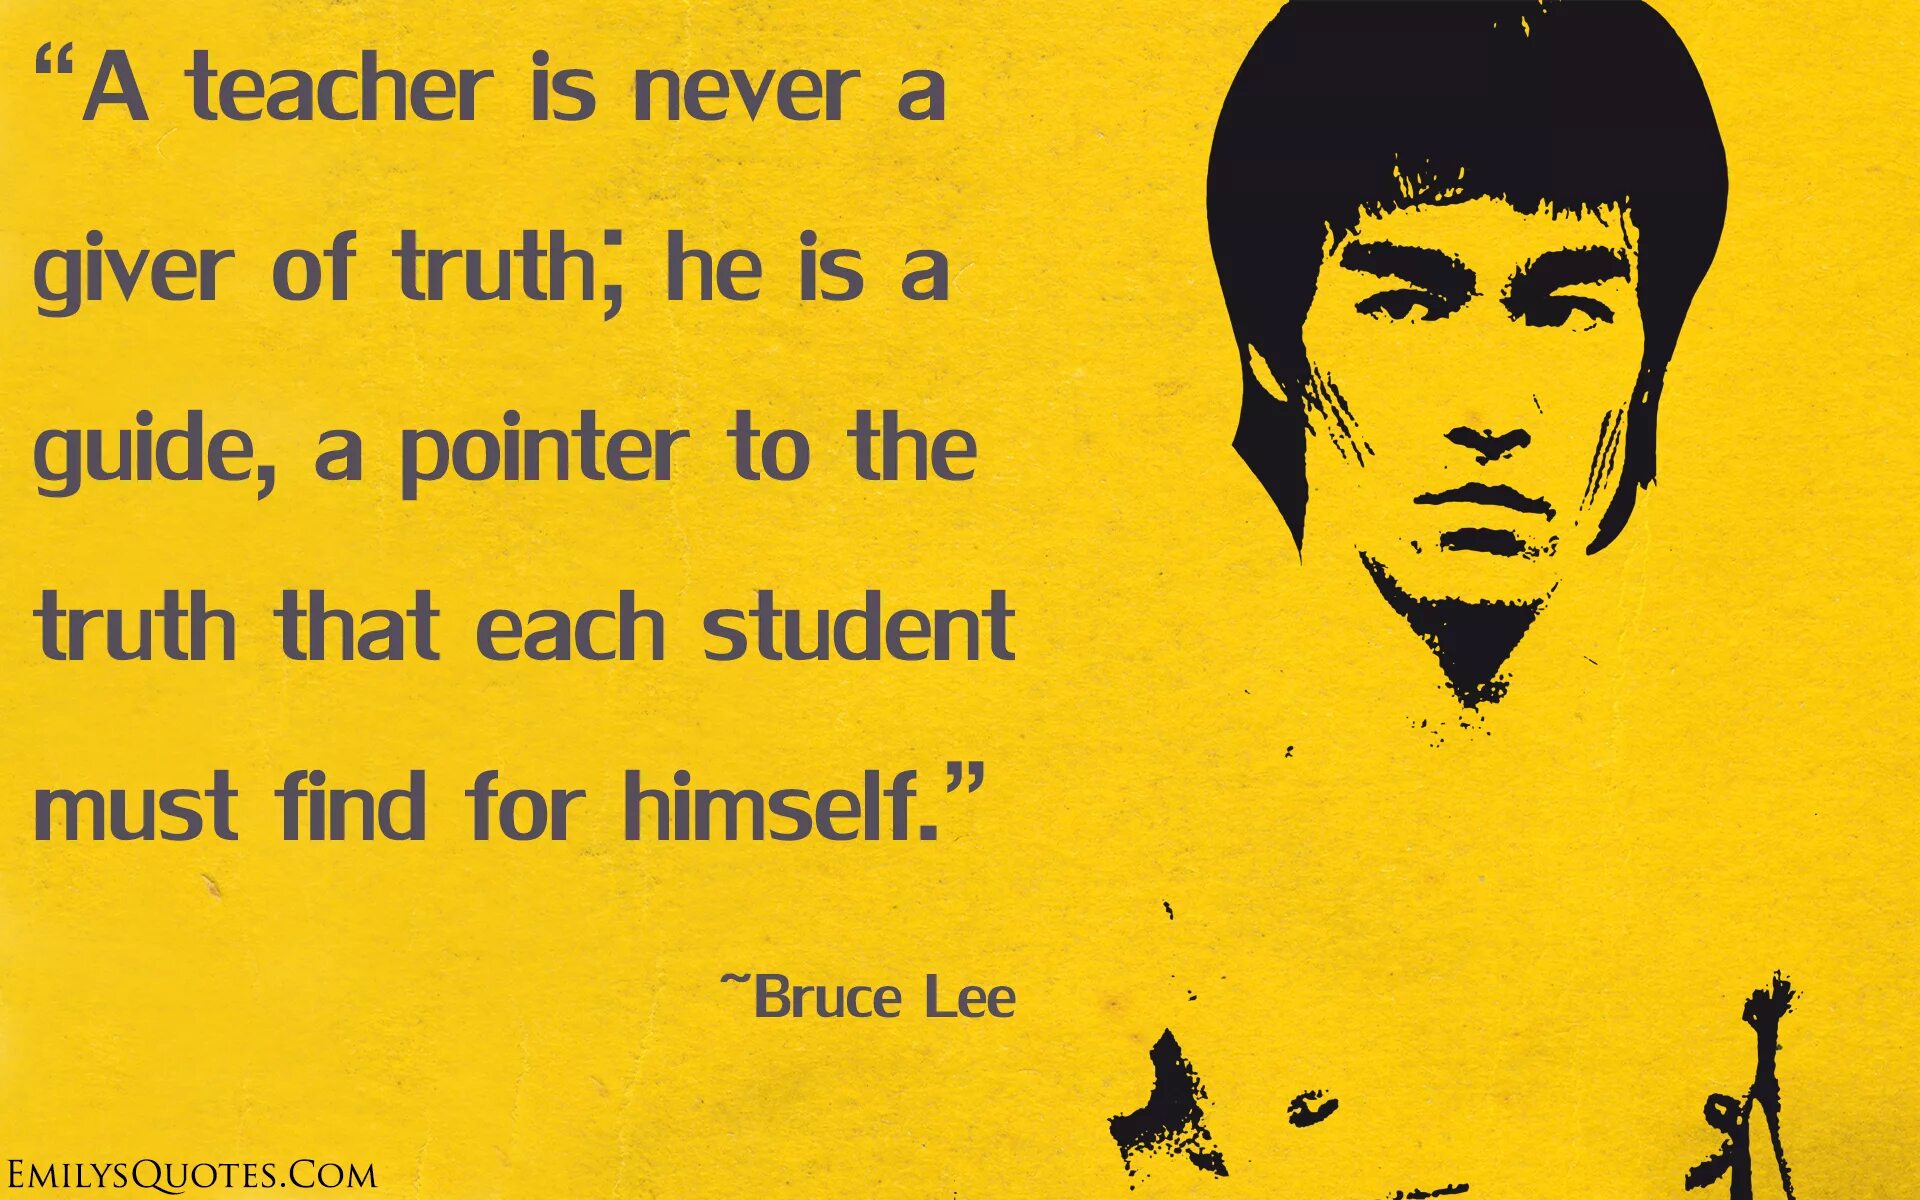 Bruce Lee quotes. Цитаты. Цитаты Брюса ли на английском. Брюс ли цитаты мотивация.